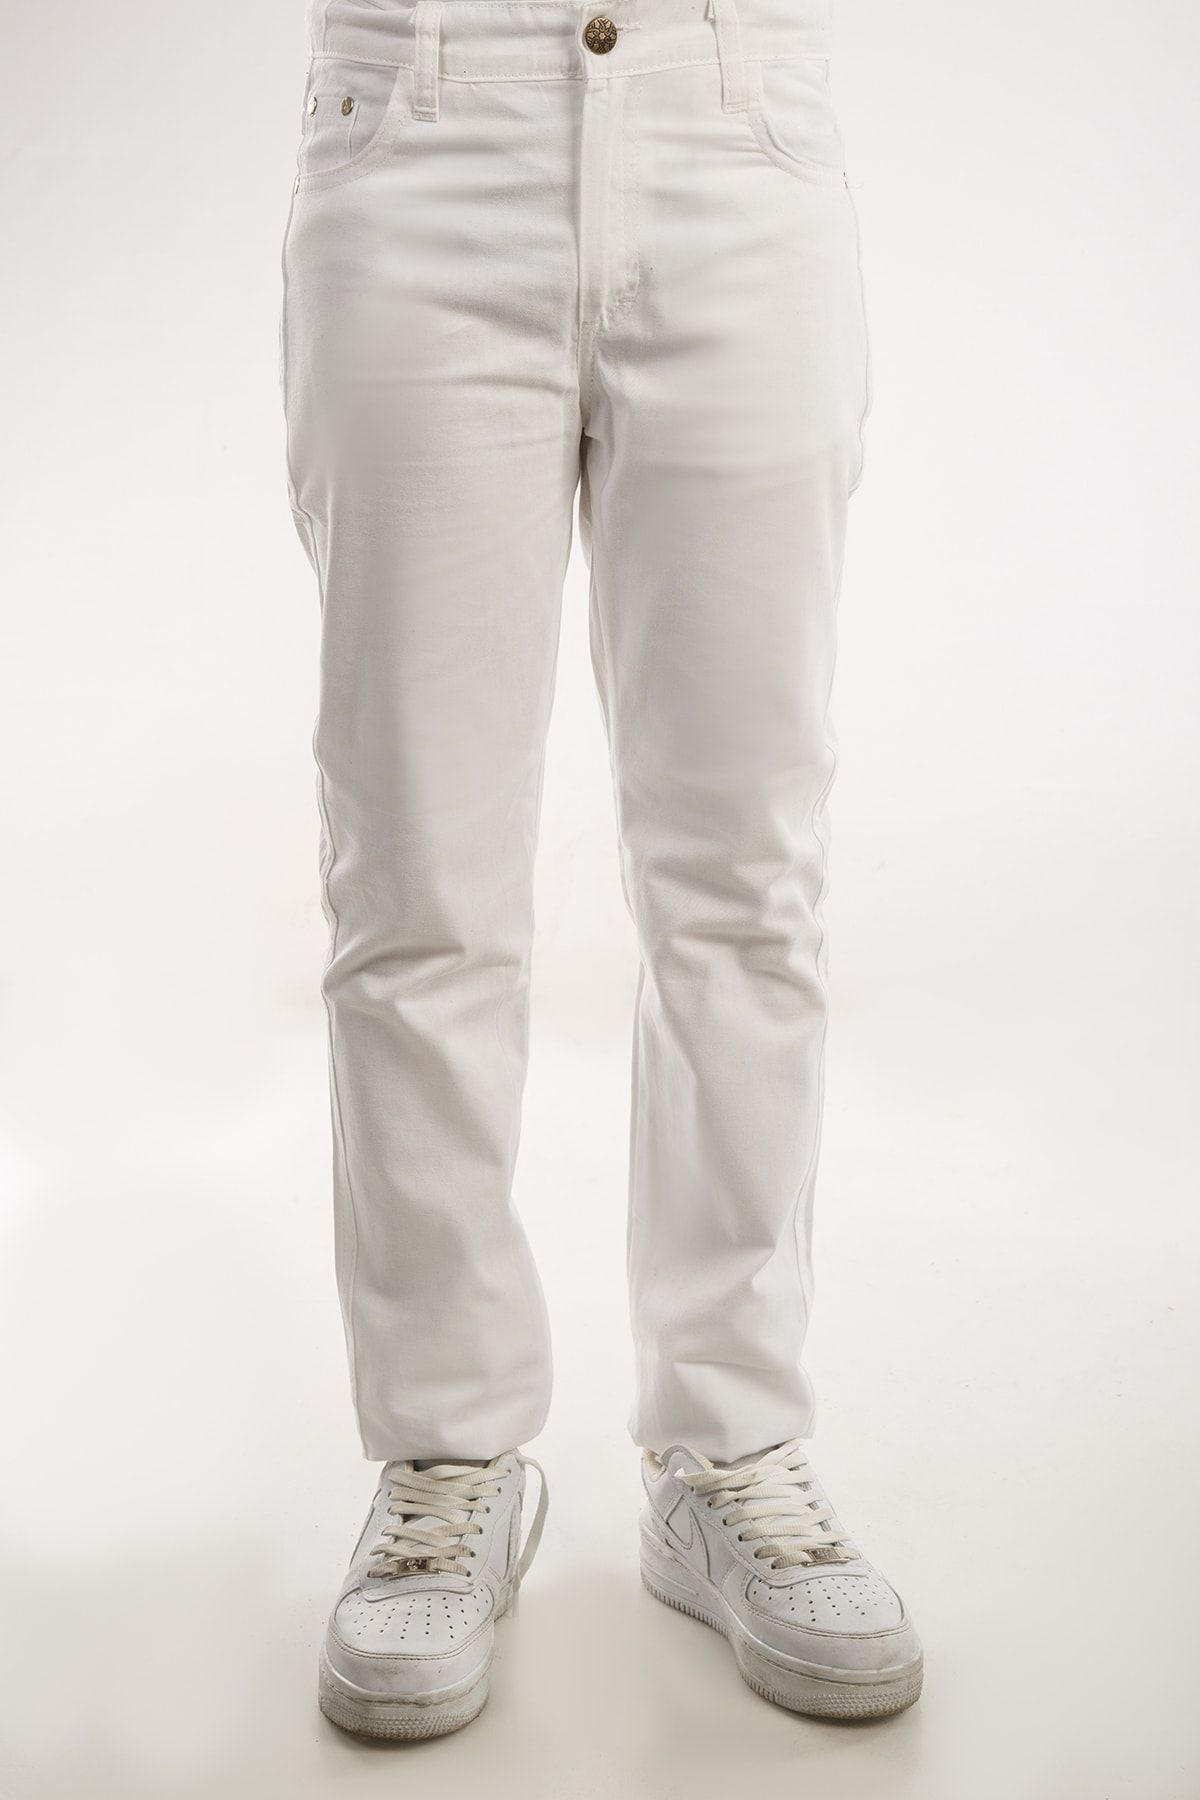 AJN 23 Nisan 19 Mayıs Kız Erkek Unisex Uygundur Beyaz Pantolon Ürünler Kilo 39) (boy 1.45cm) (12 Yaş